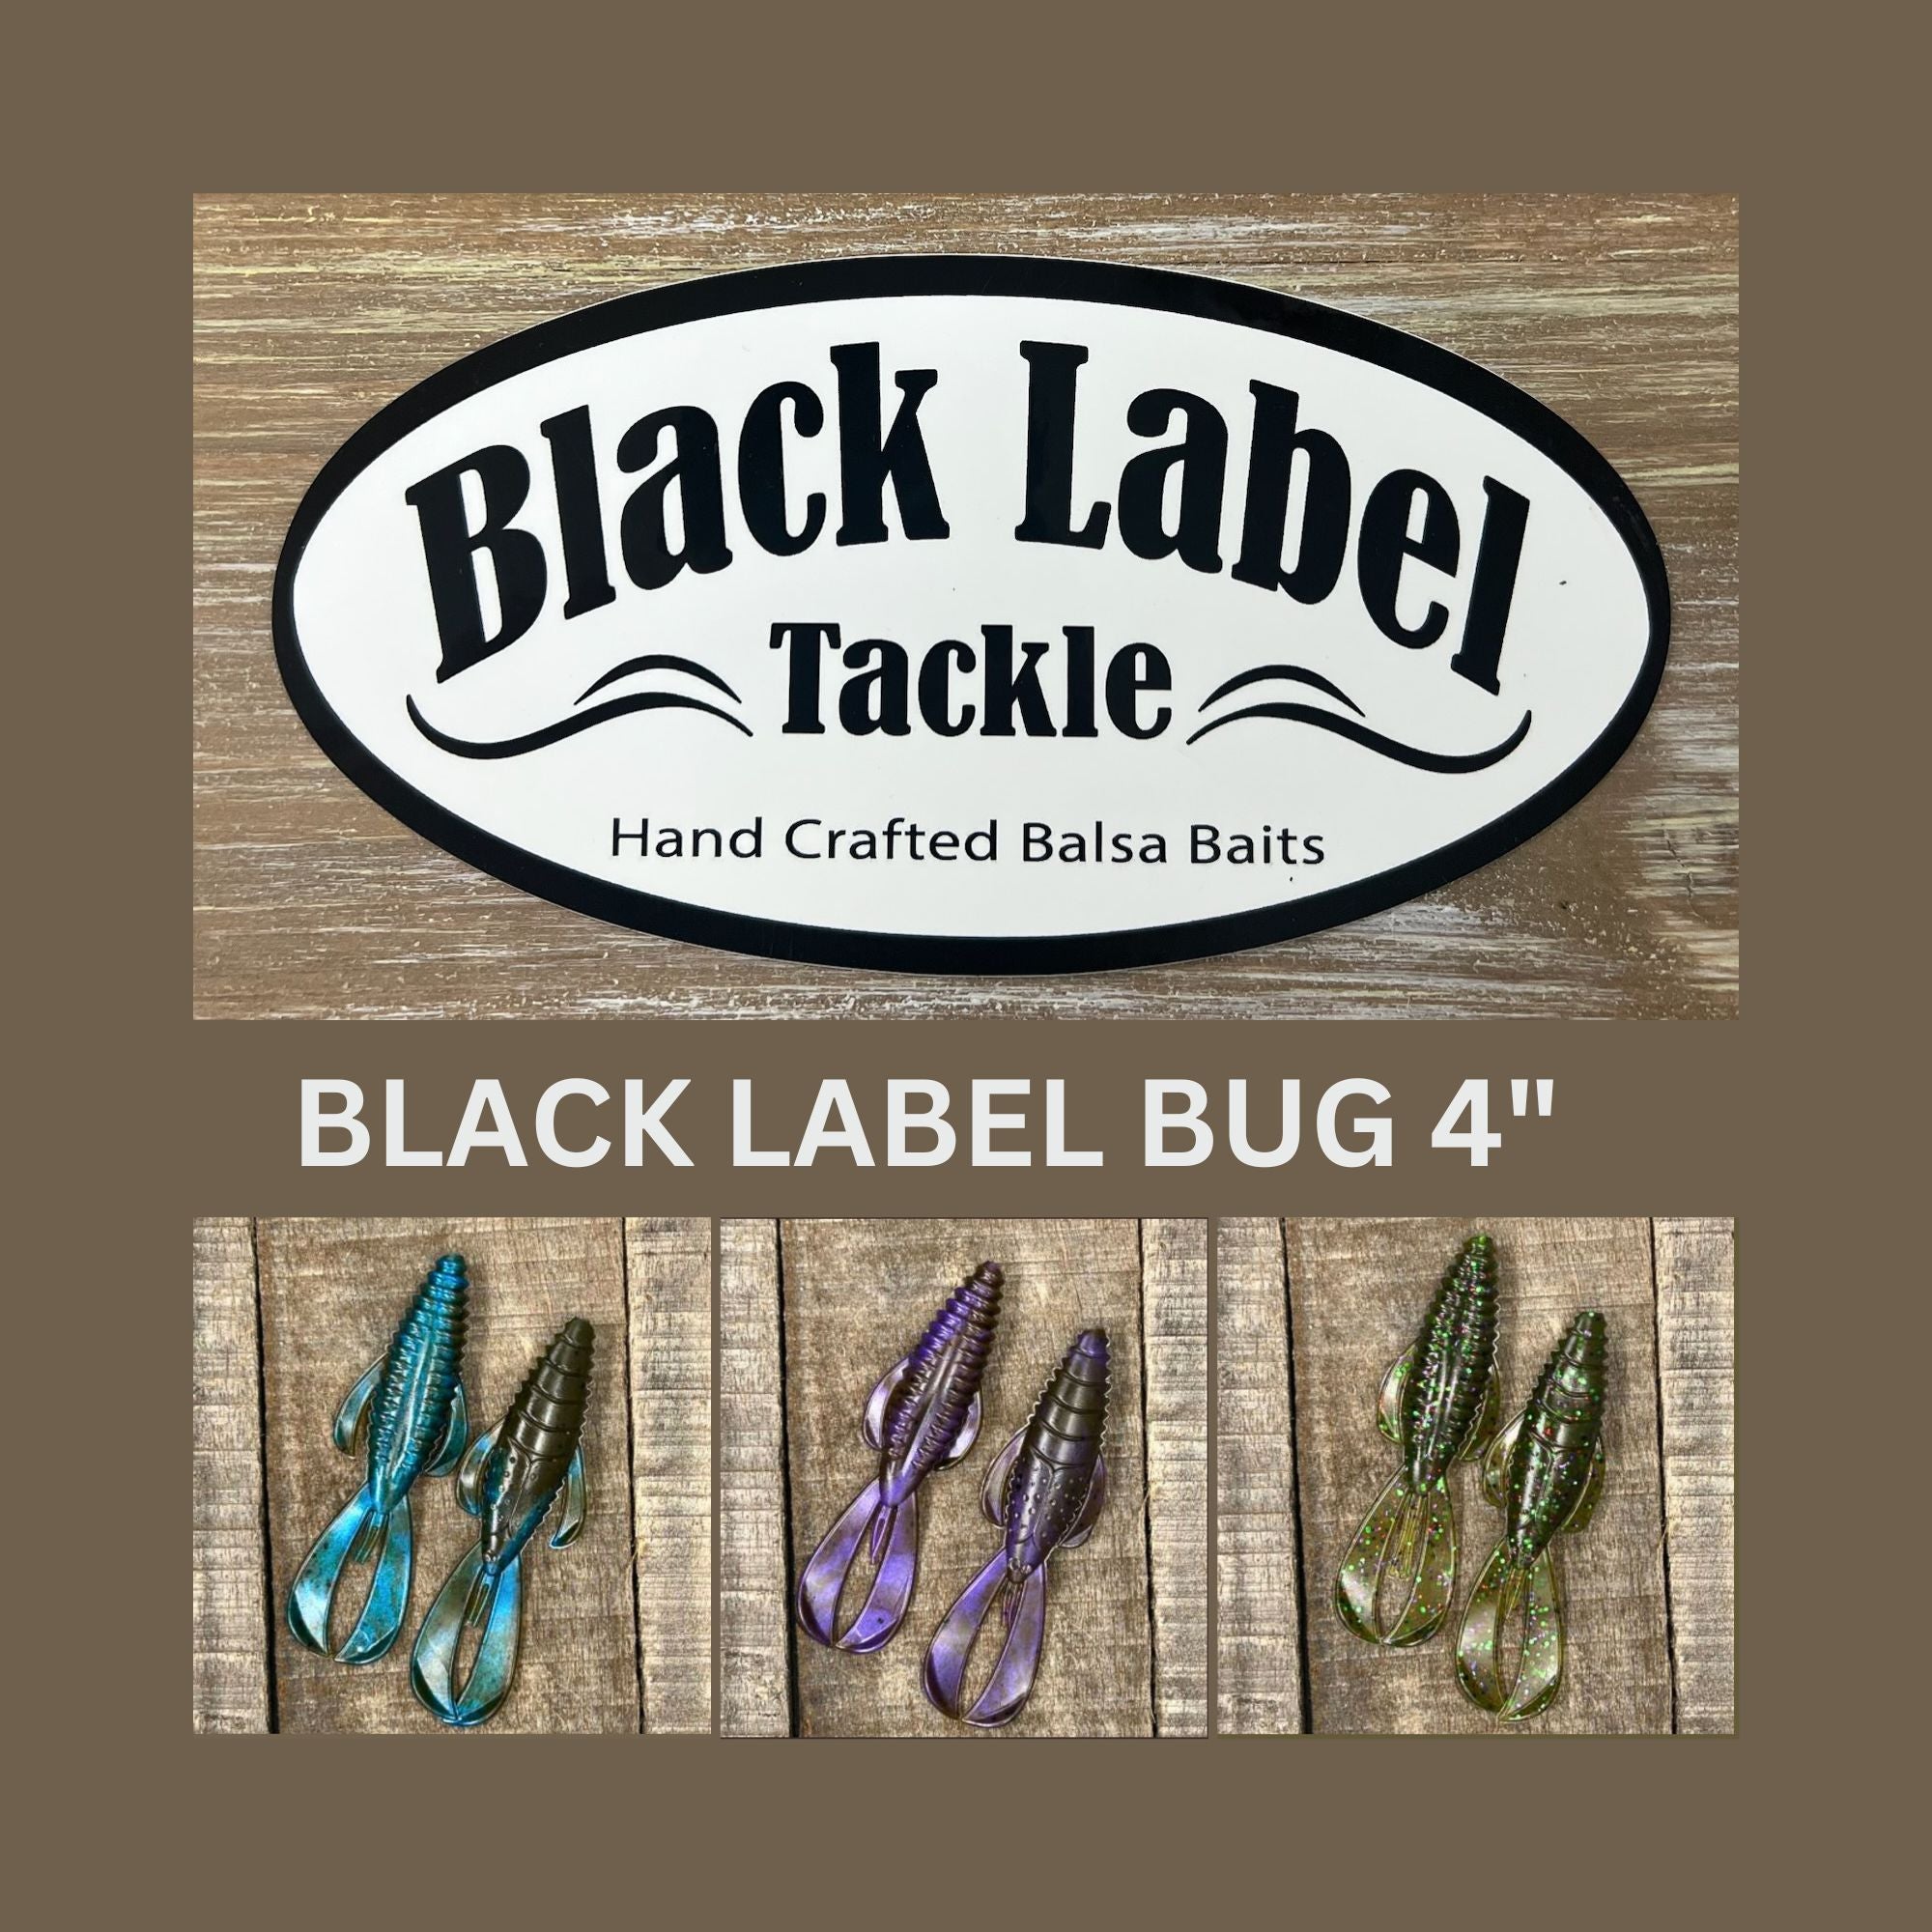 Black Label Bug 4 Lure, Black Label Tackle, Baits